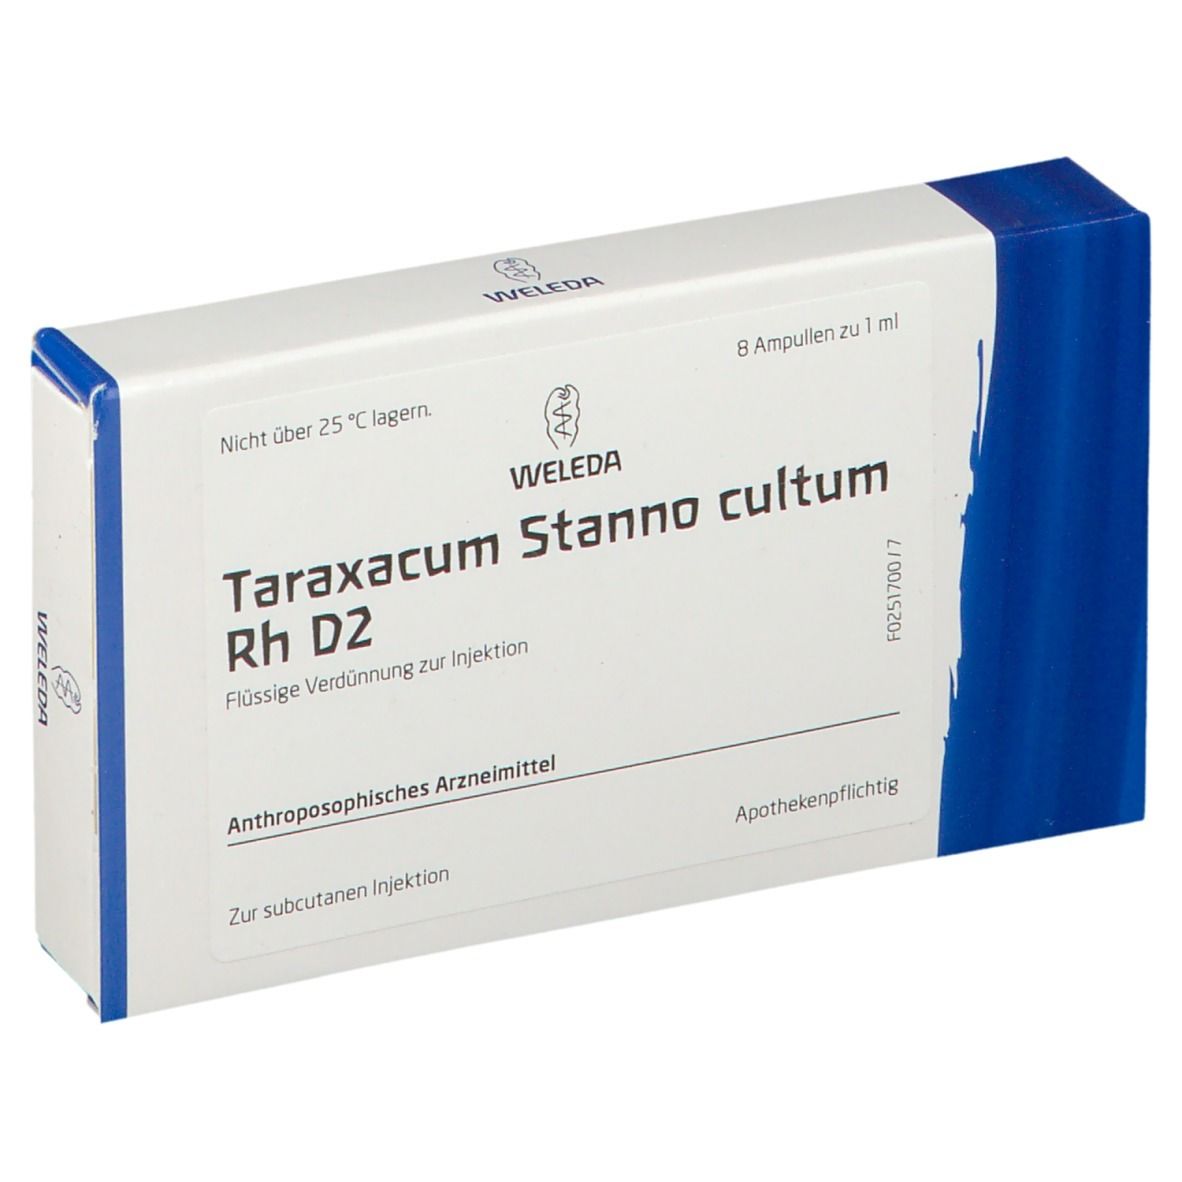 Taraxacum Stanno Cultum Rh D2